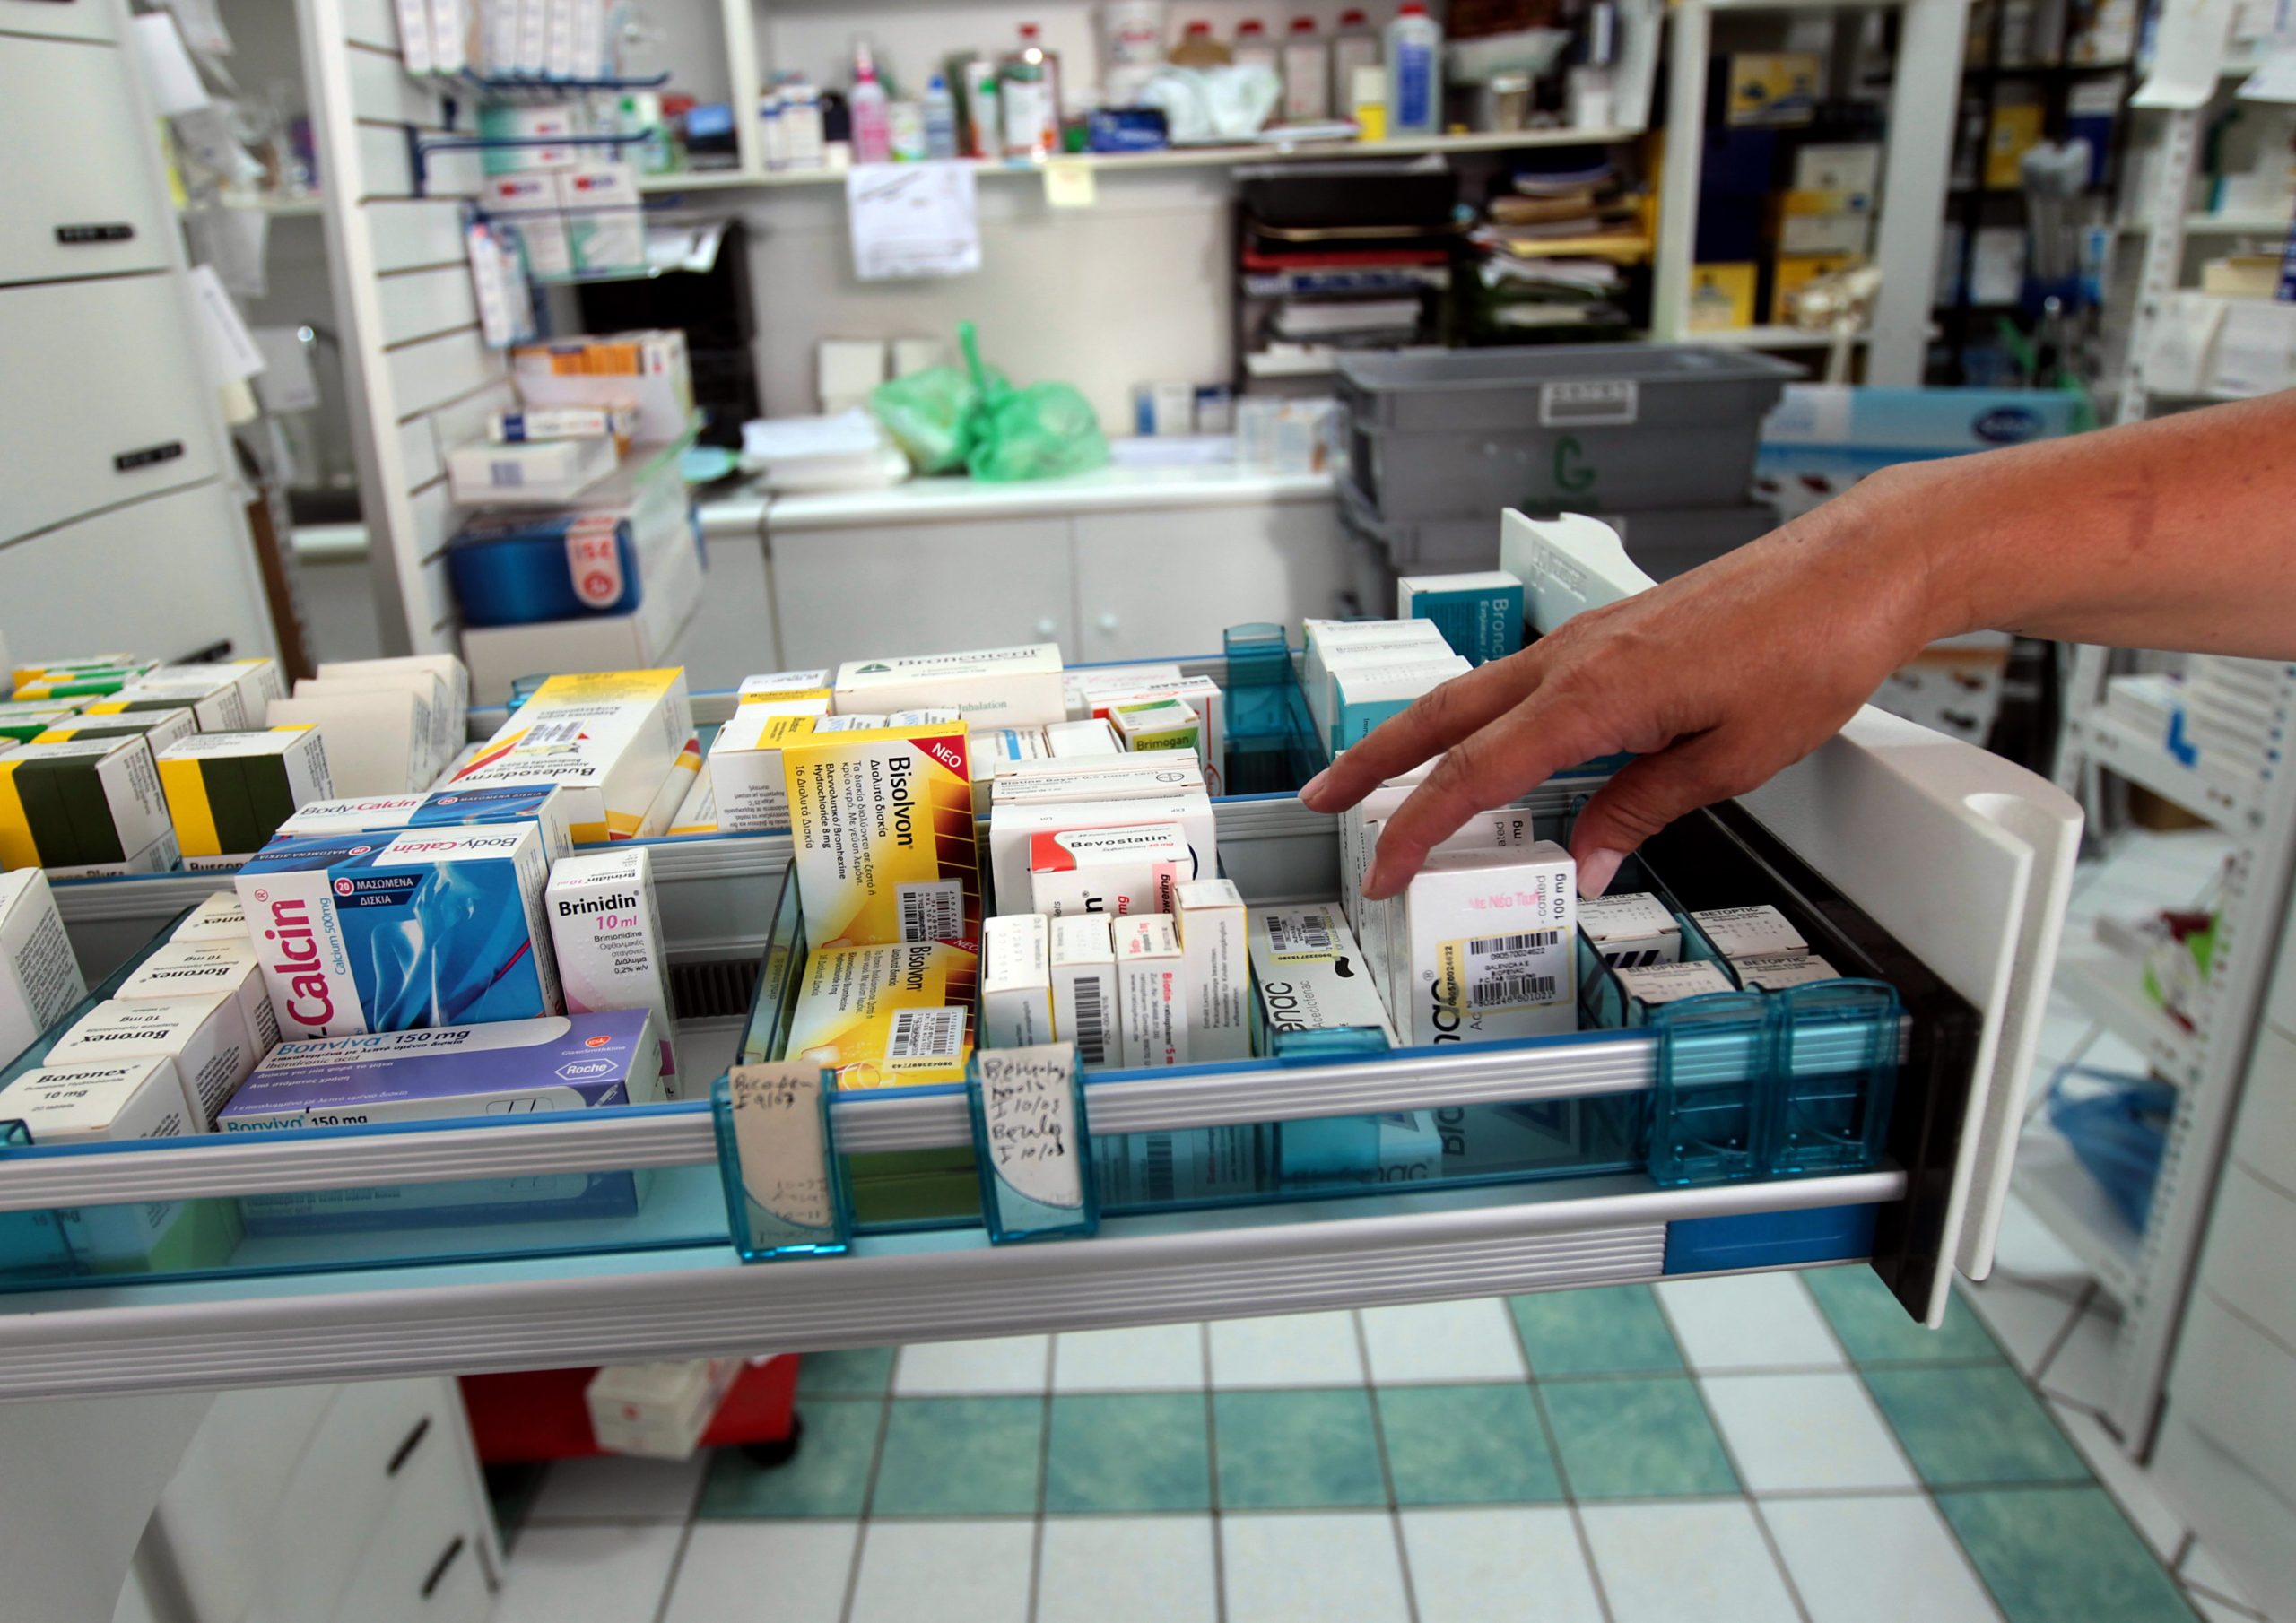 Αναστολή πίστωσης αναλώσιμων του διαβήτη προς τον ΕΟΠΥΥ ανακοίνωσαν οι φαρμακοποιοί της Αθήνας